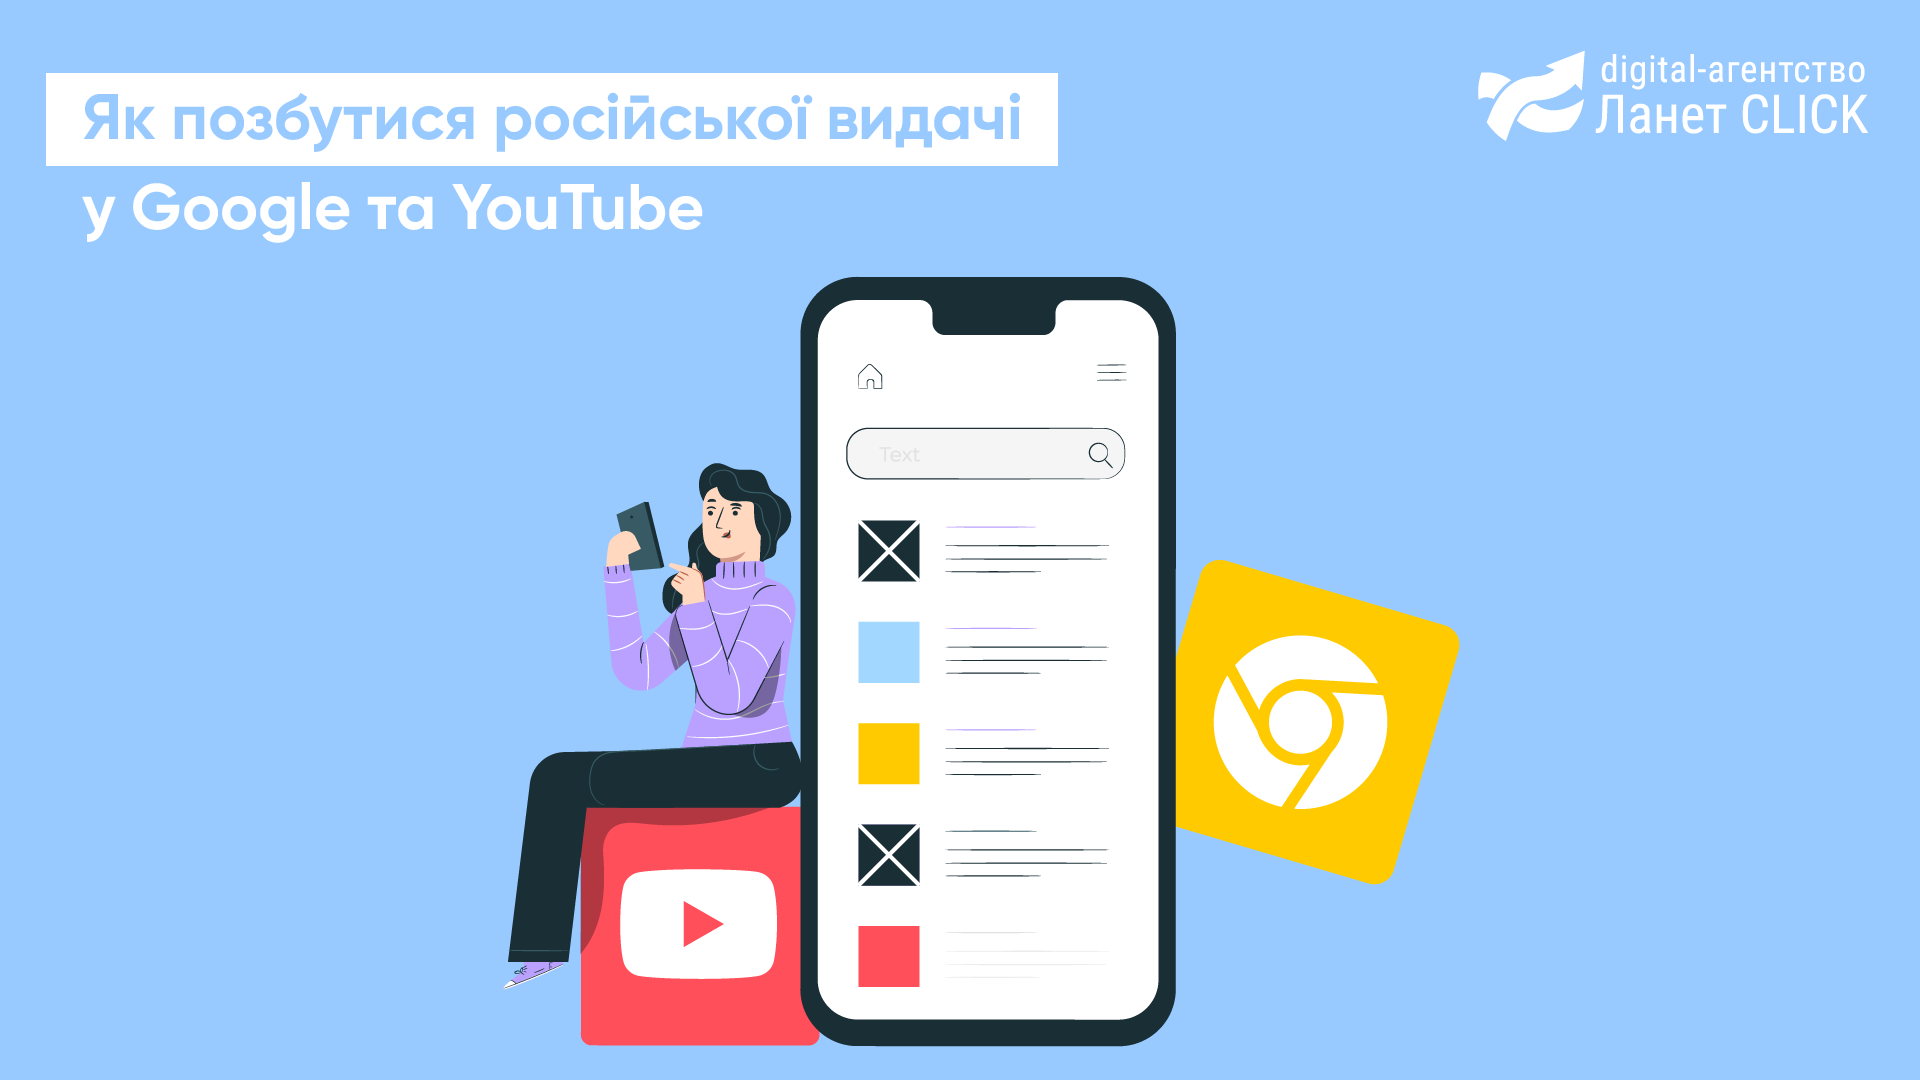 Як позбутися російської видачі в Google та YouTube